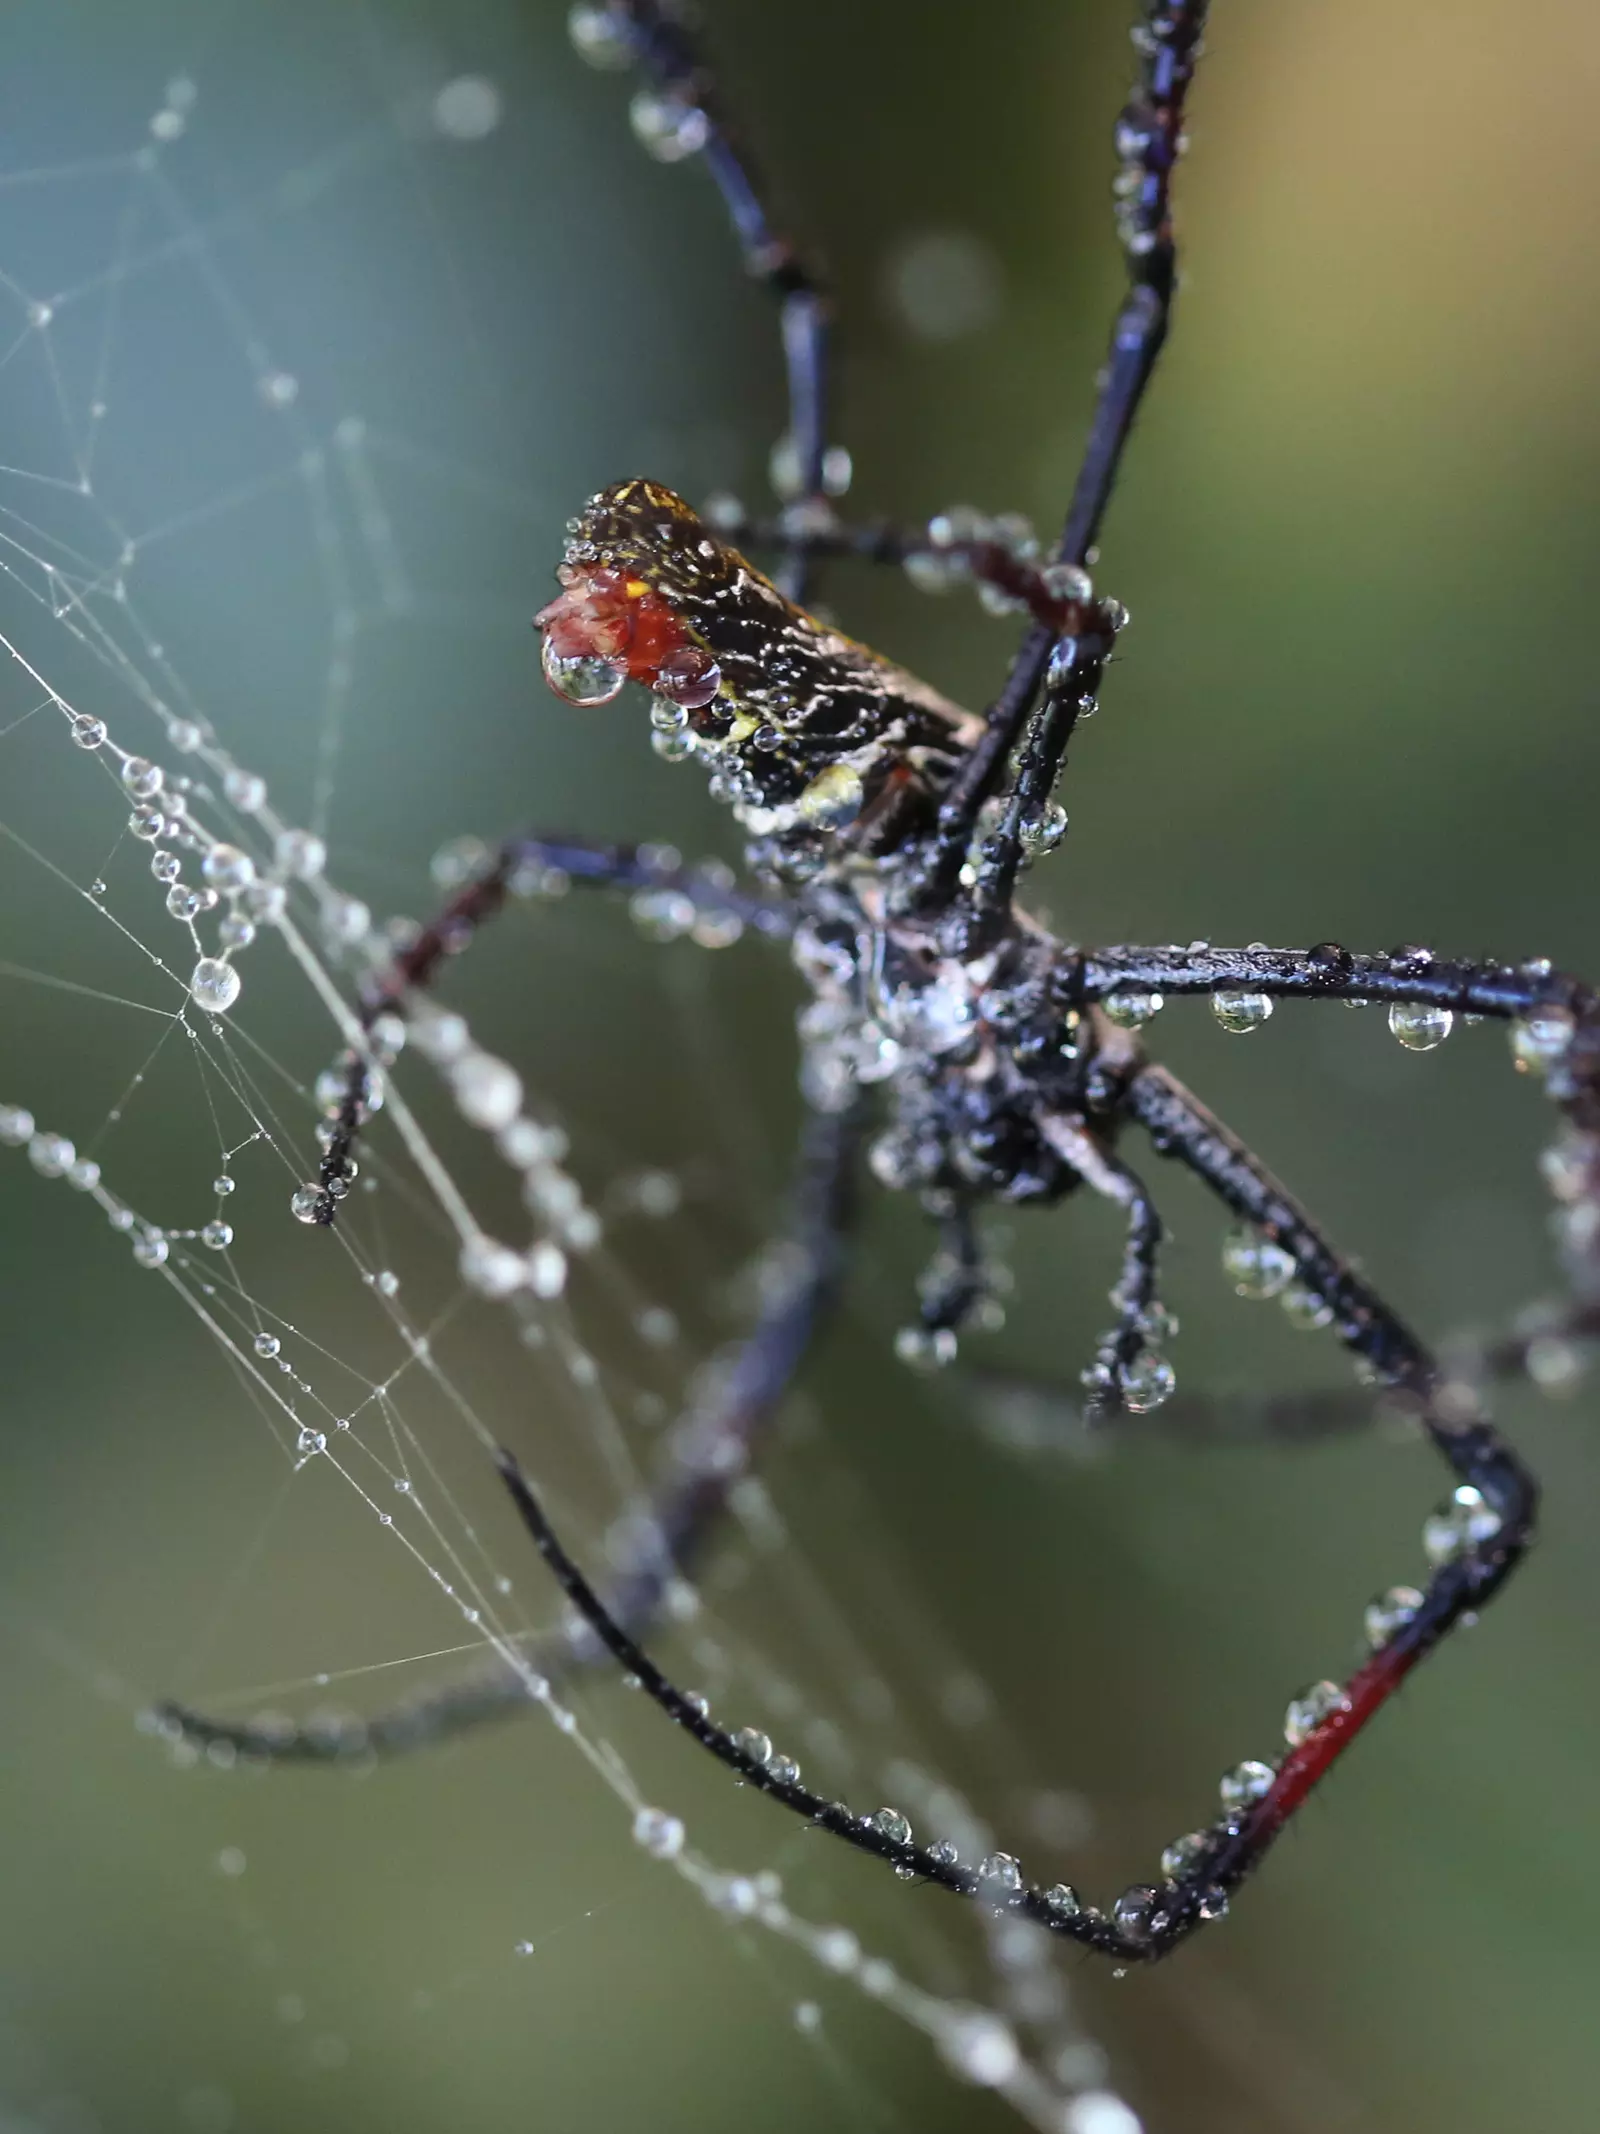 Madagascar Orb Weaver in a web